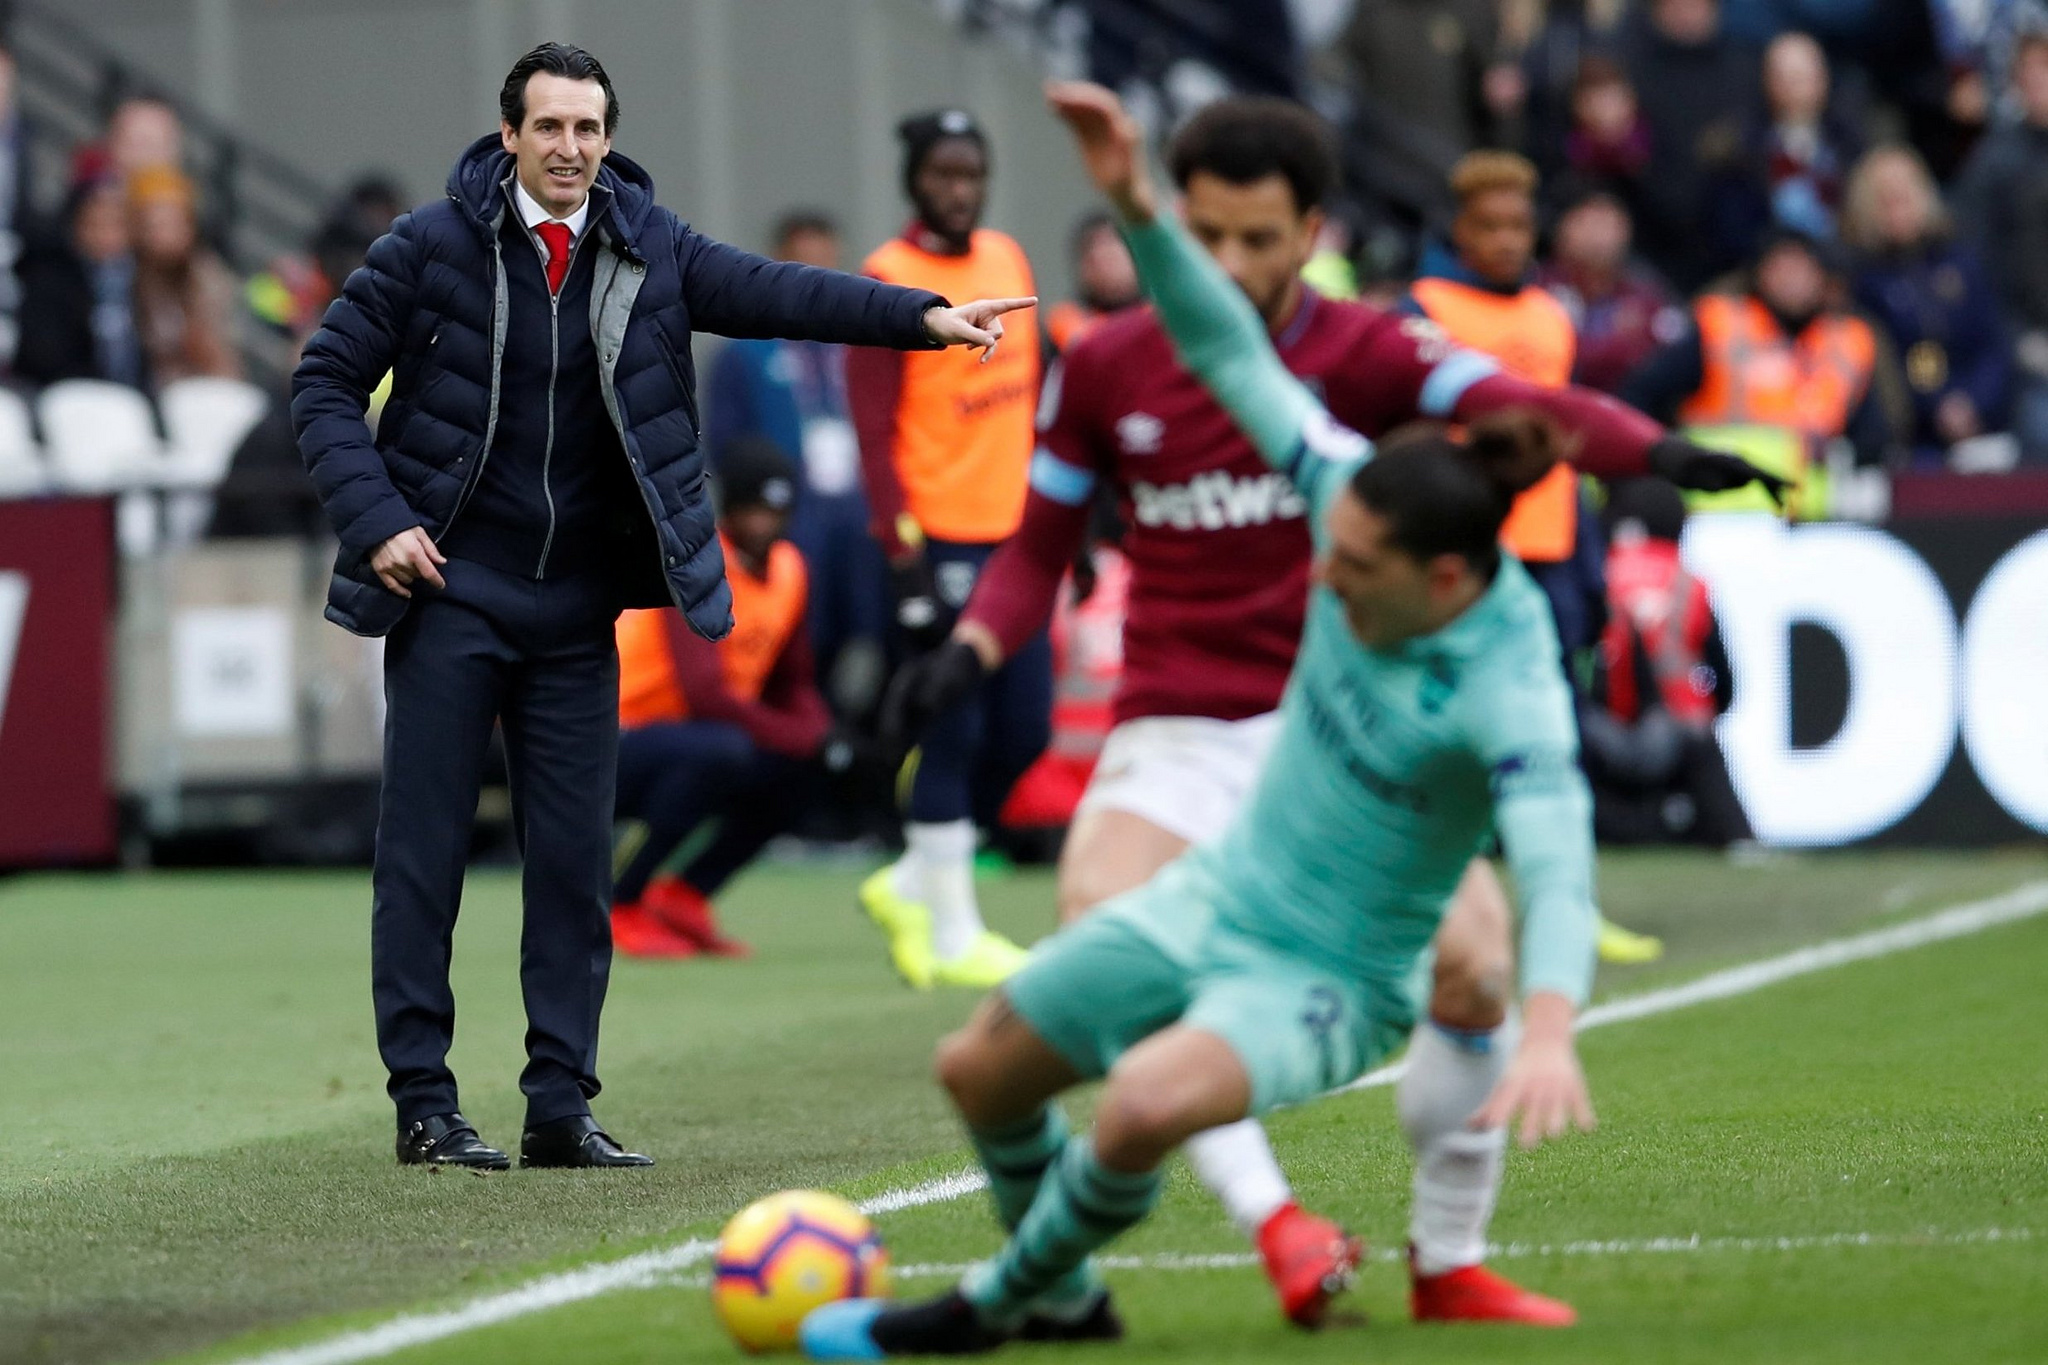 Arsenal’s Season Reaches New Low